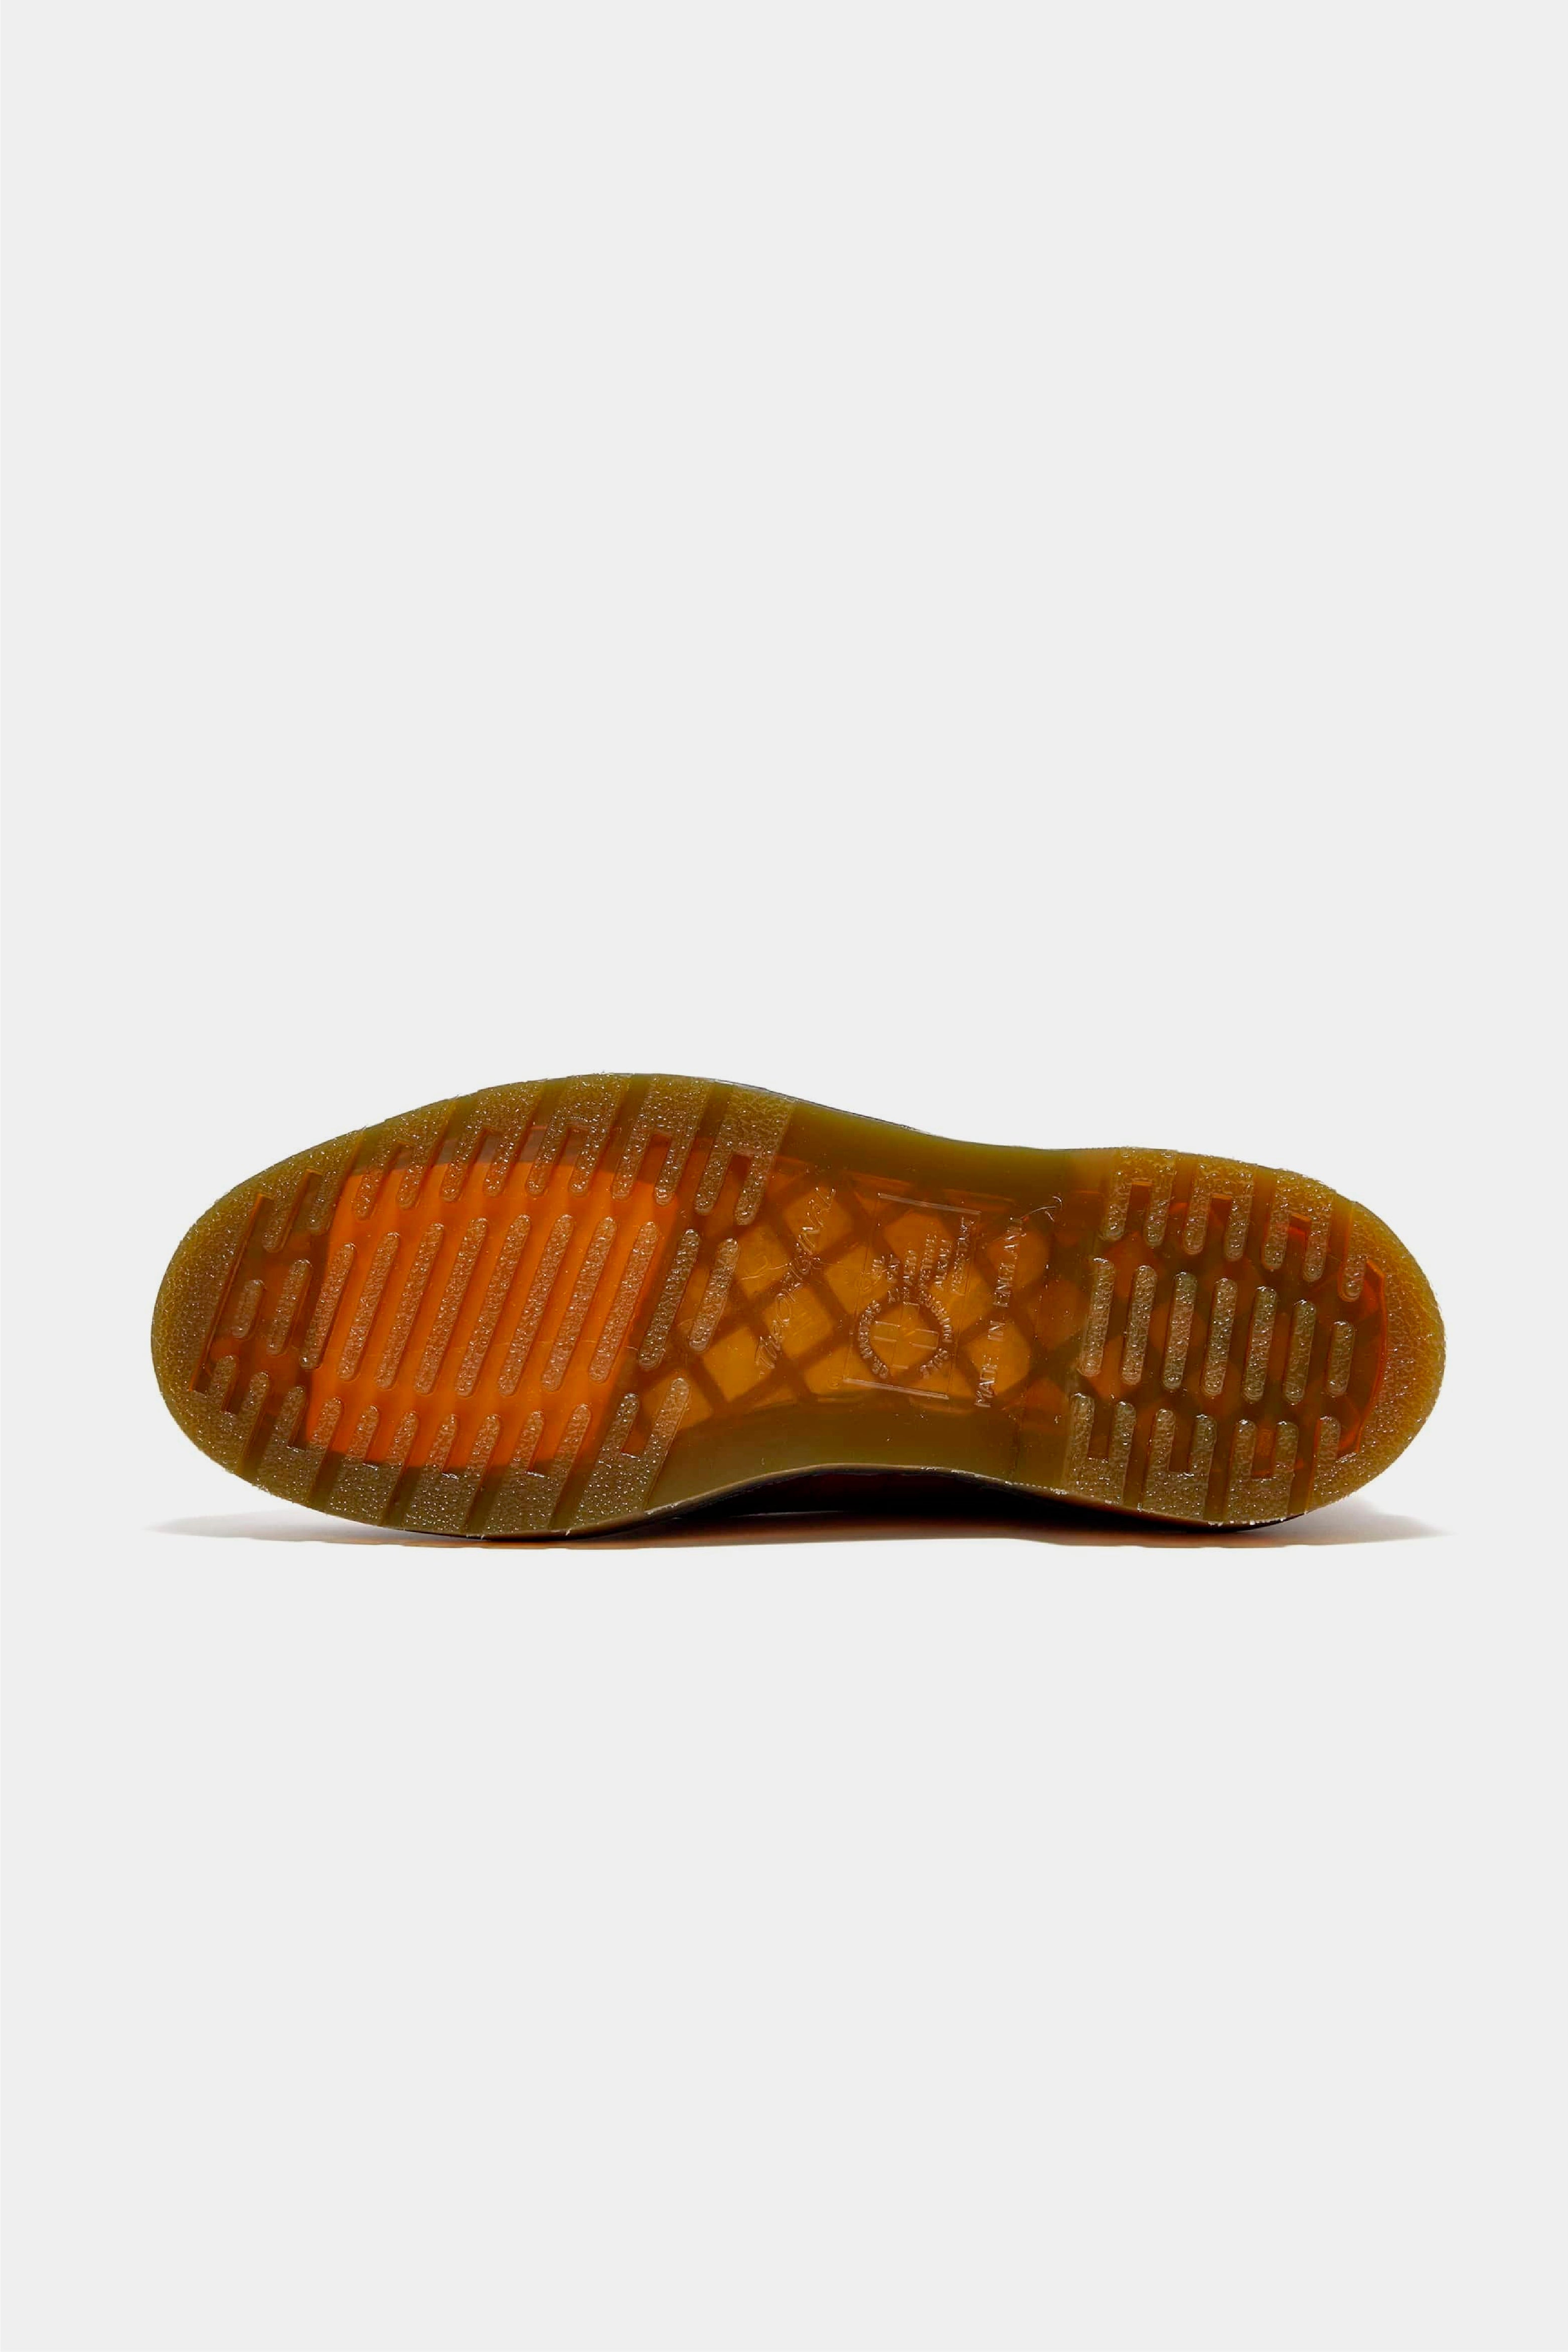 Selectshop FRAME - UNDERCOVER Undercover x Dr. Martens Shoes Footwear Concept Store Dubai